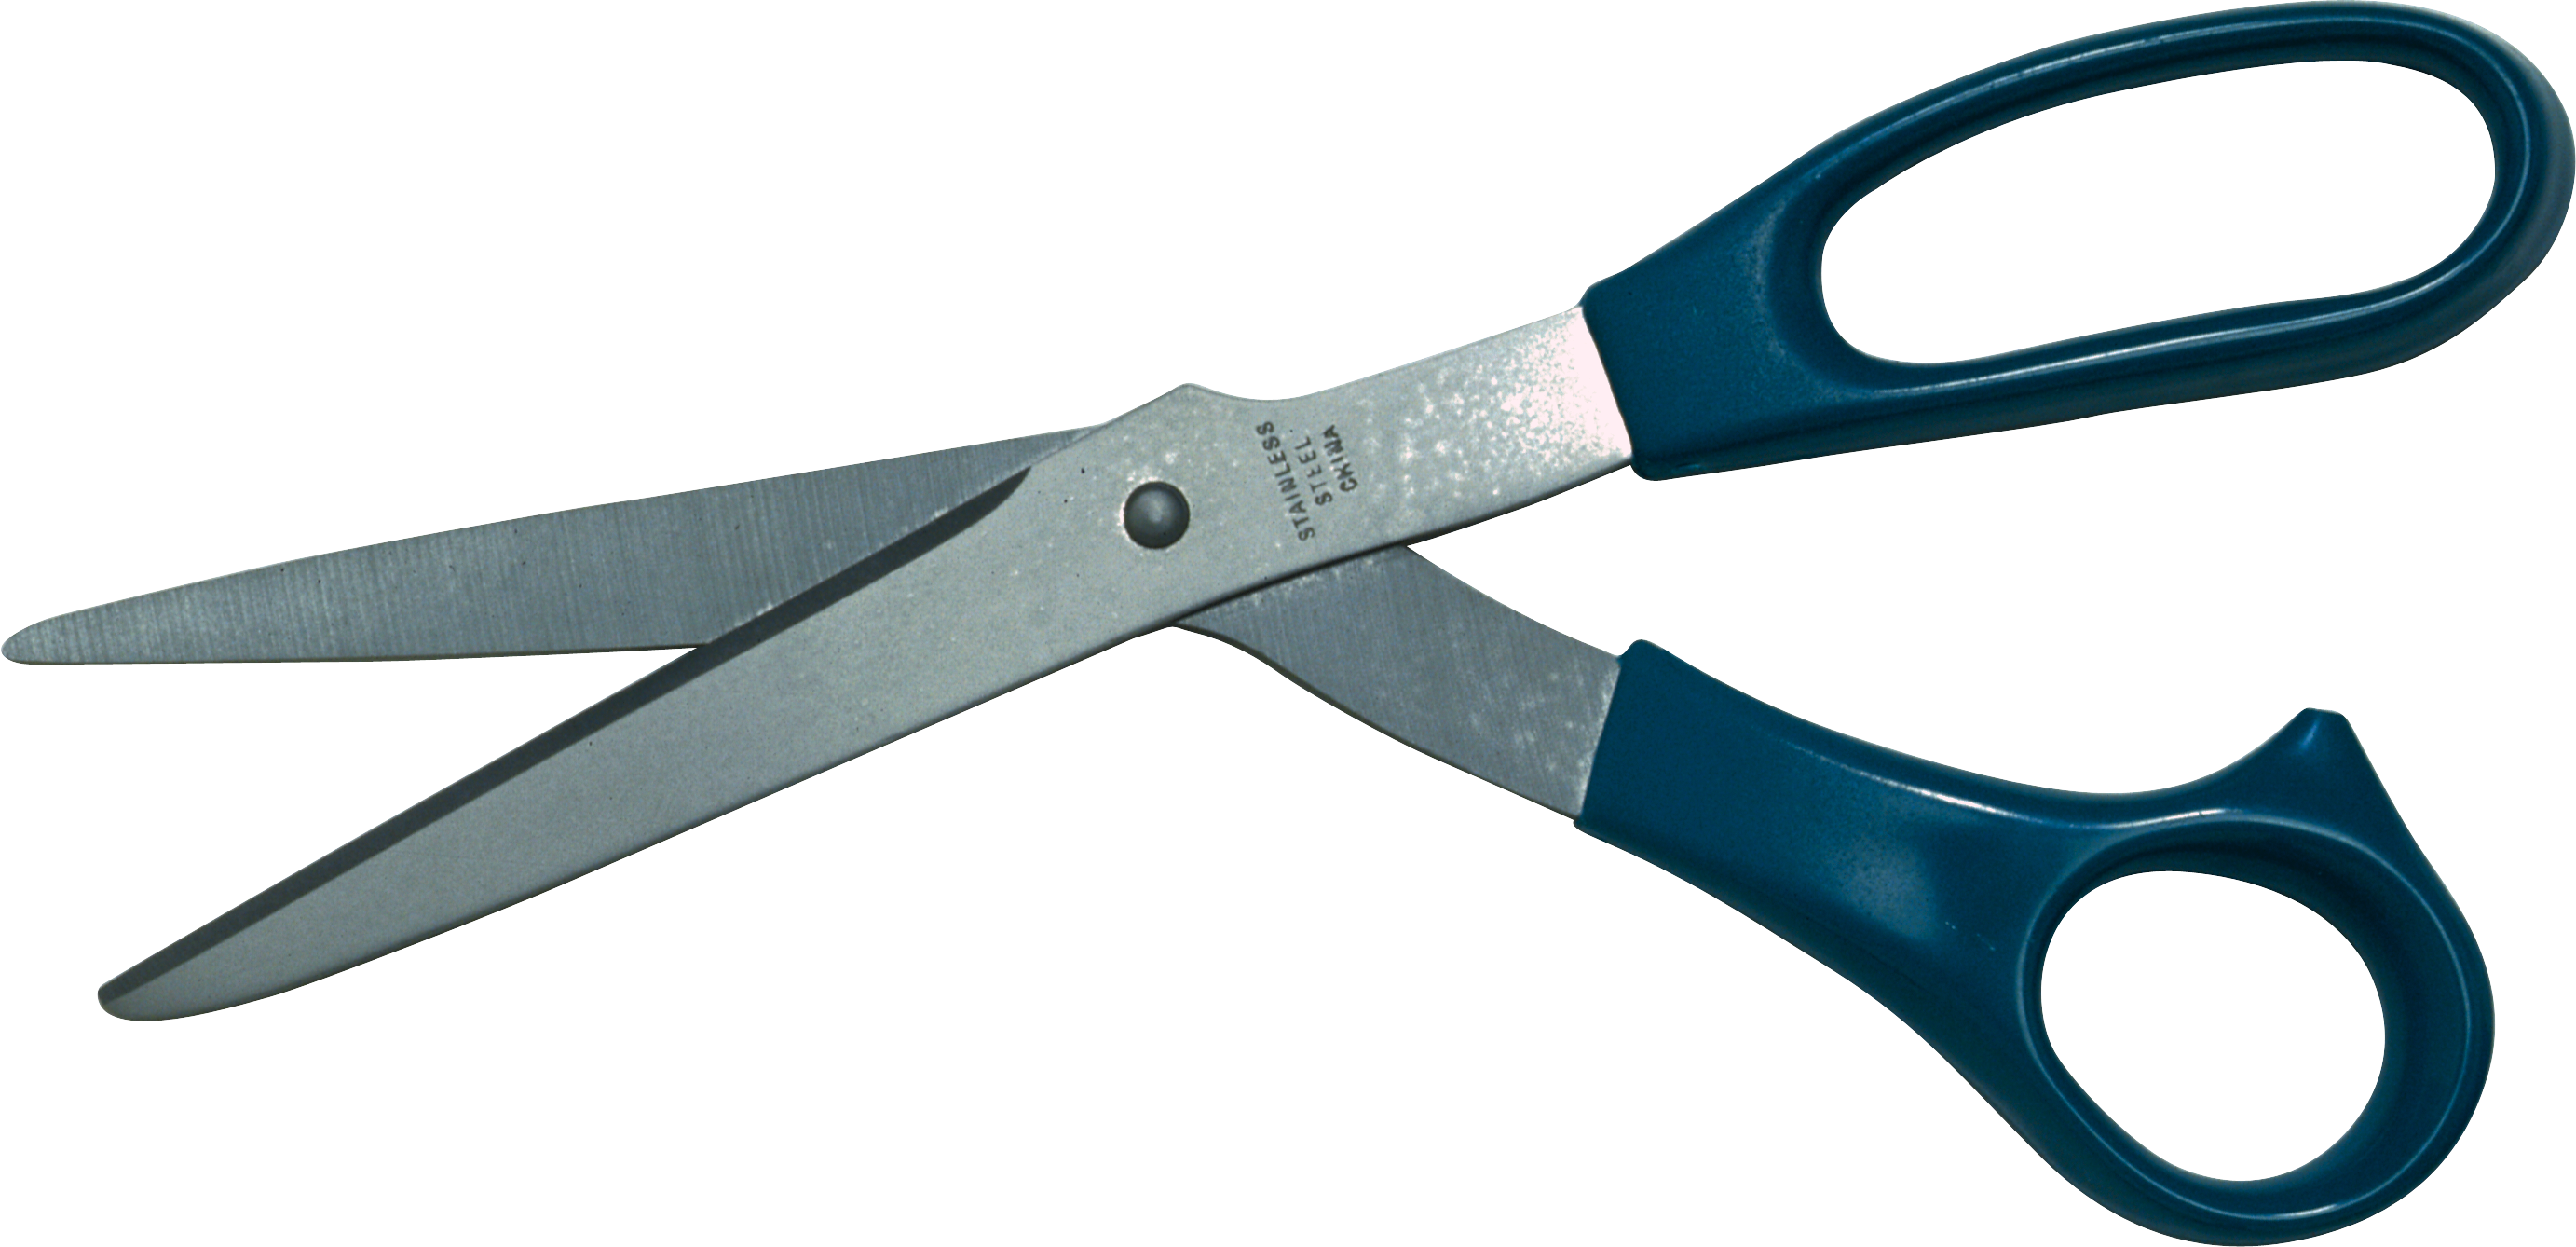 Scissors Png Image - Scissors (2765x1338)